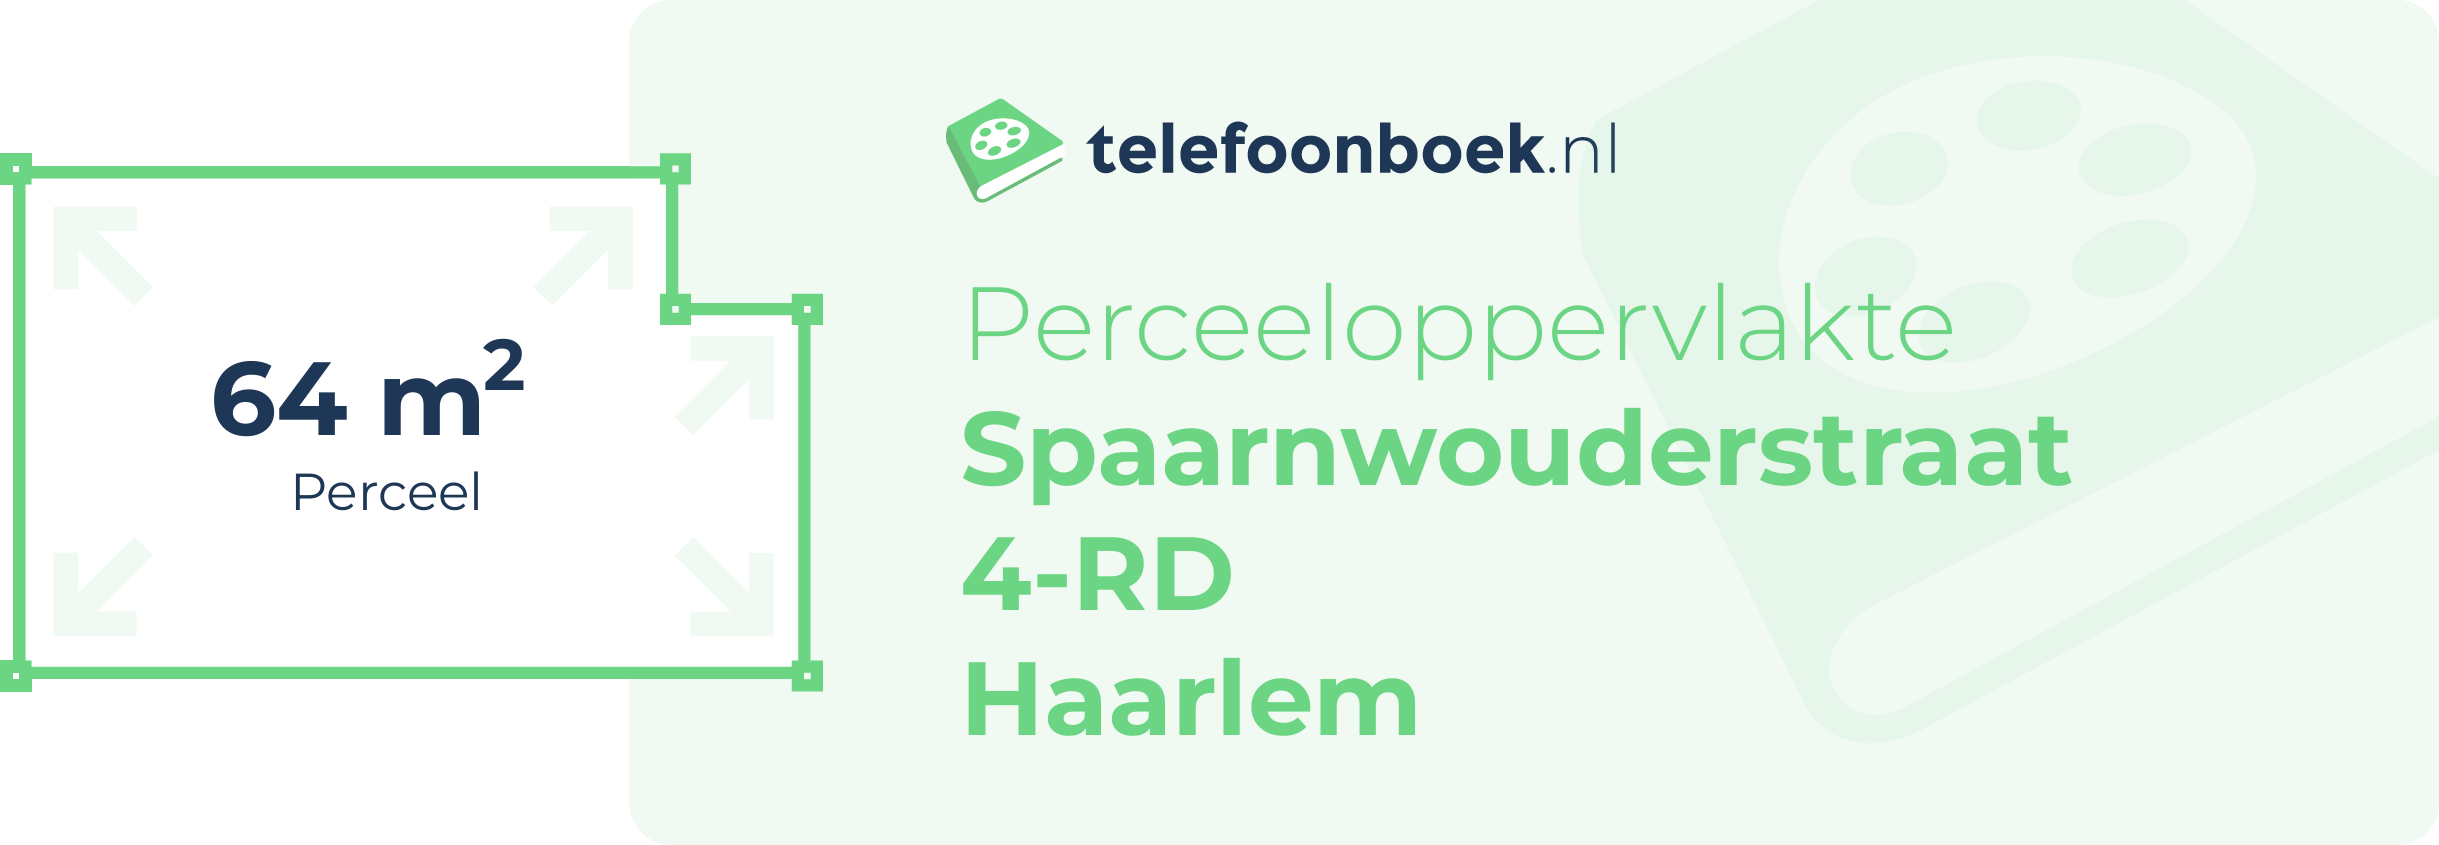 Perceeloppervlakte Spaarnwouderstraat 4-RD Haarlem